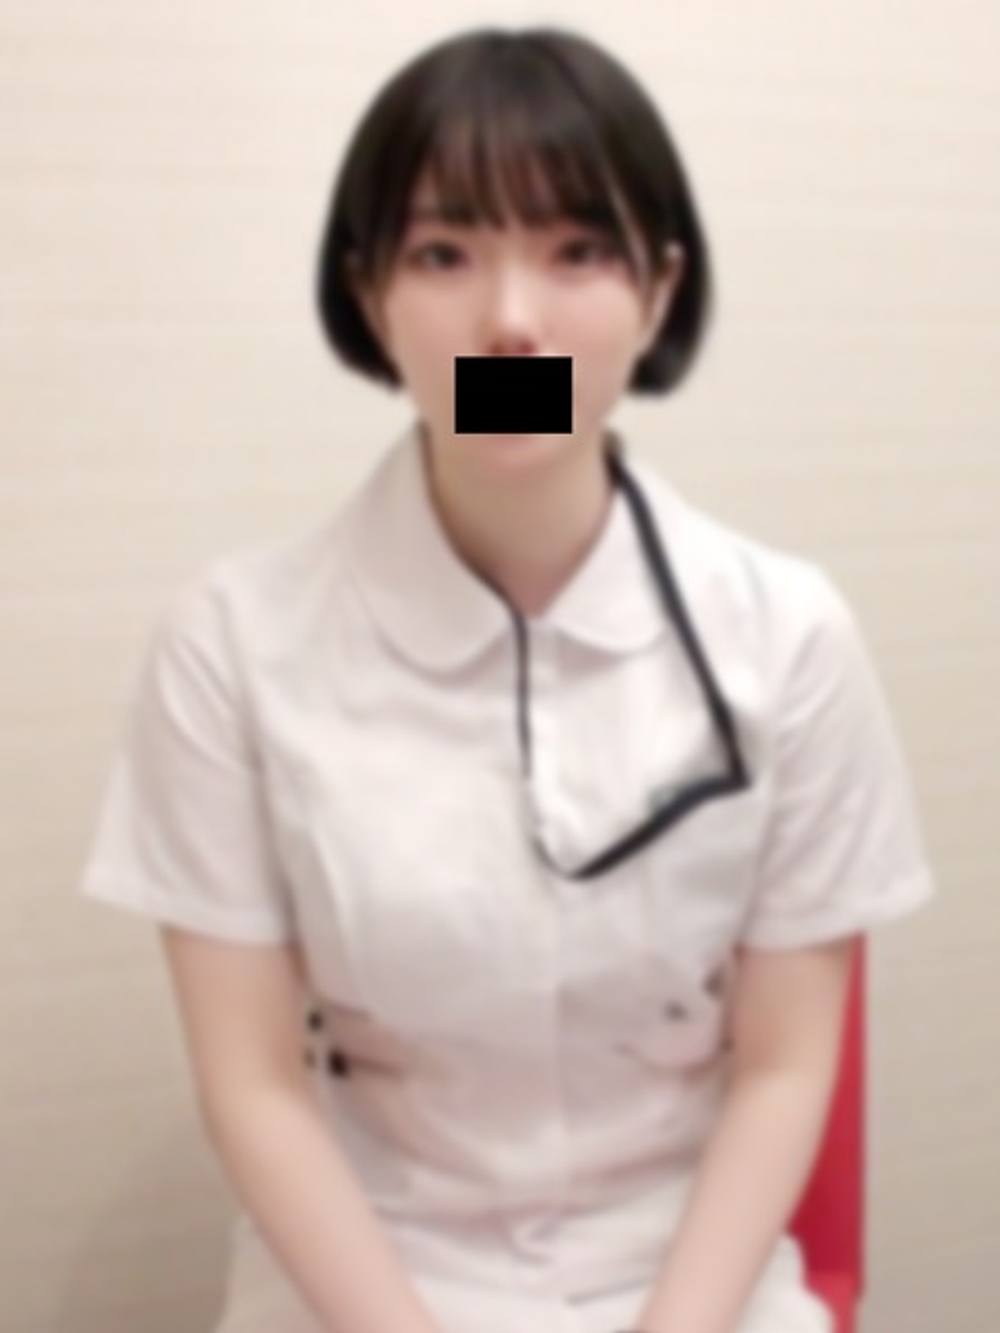 【本物素人】国立病院小児科　純白Gカップ爆乳看護師に危険日大量中出し。【完全オリジナル】